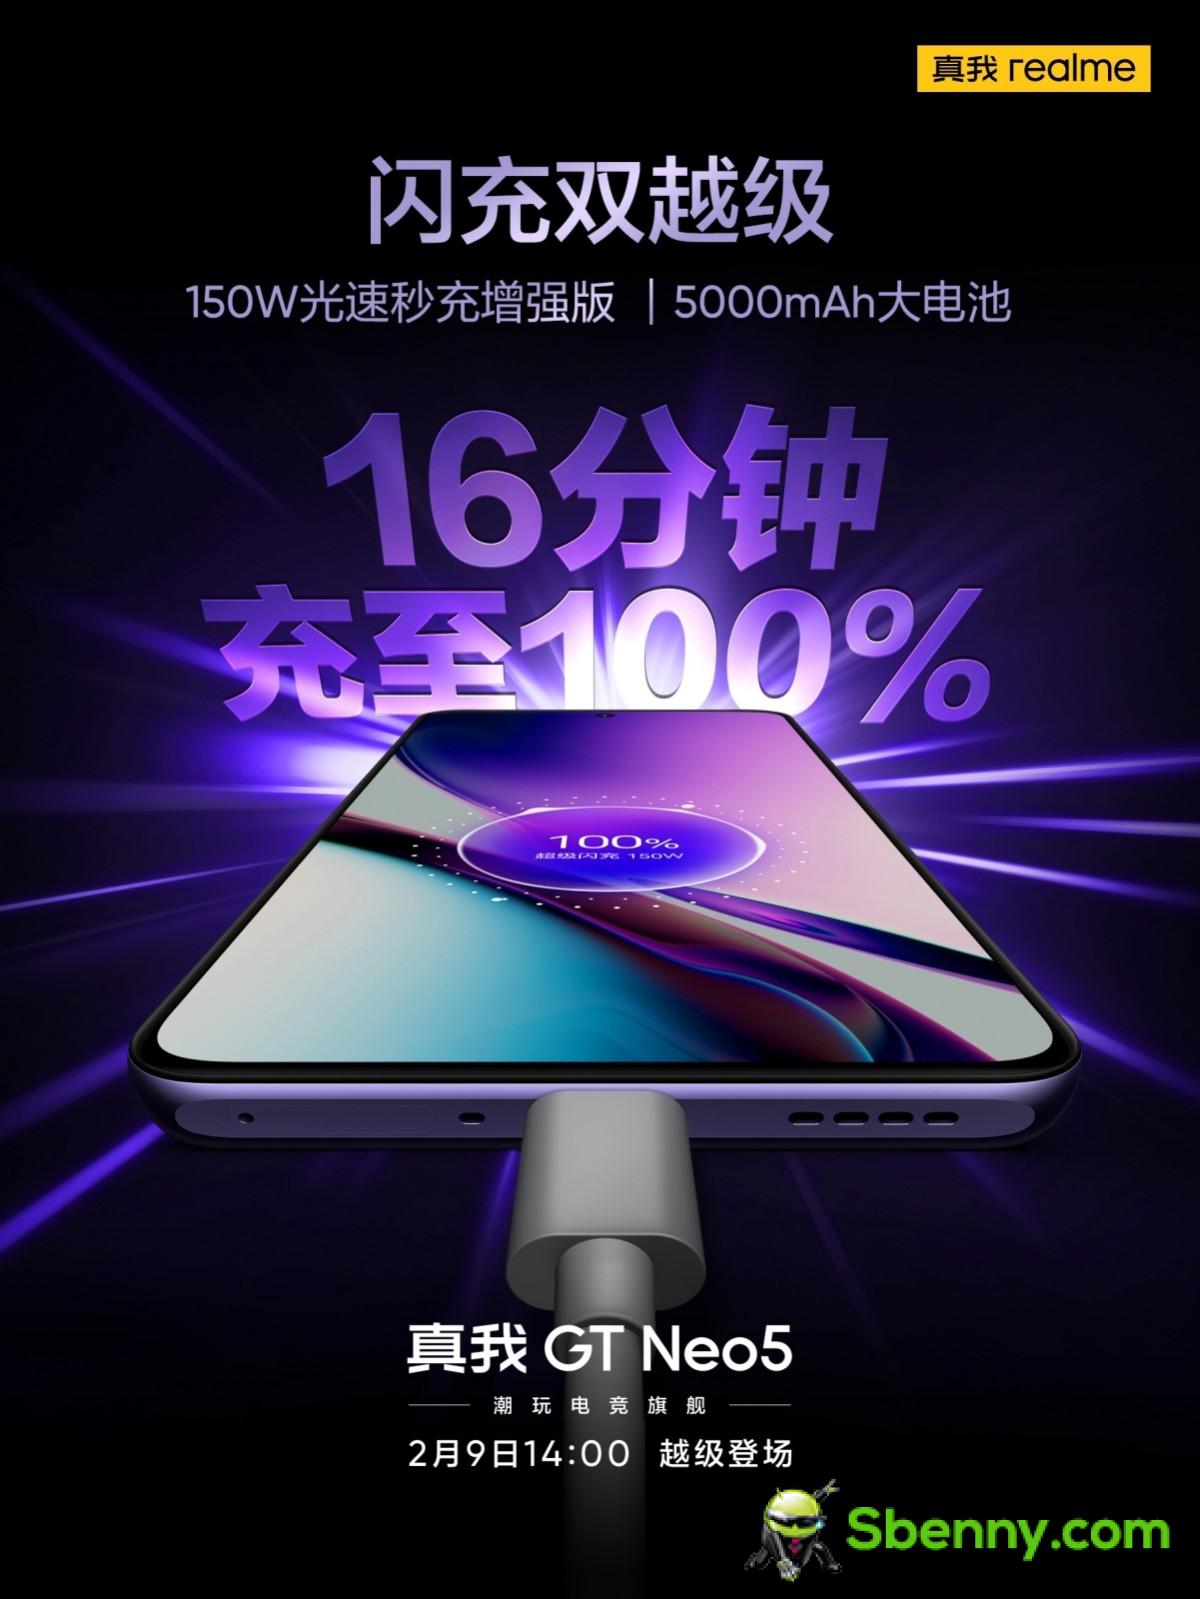 Realme confirme que GT Neo 5 aura une variante de 150 W